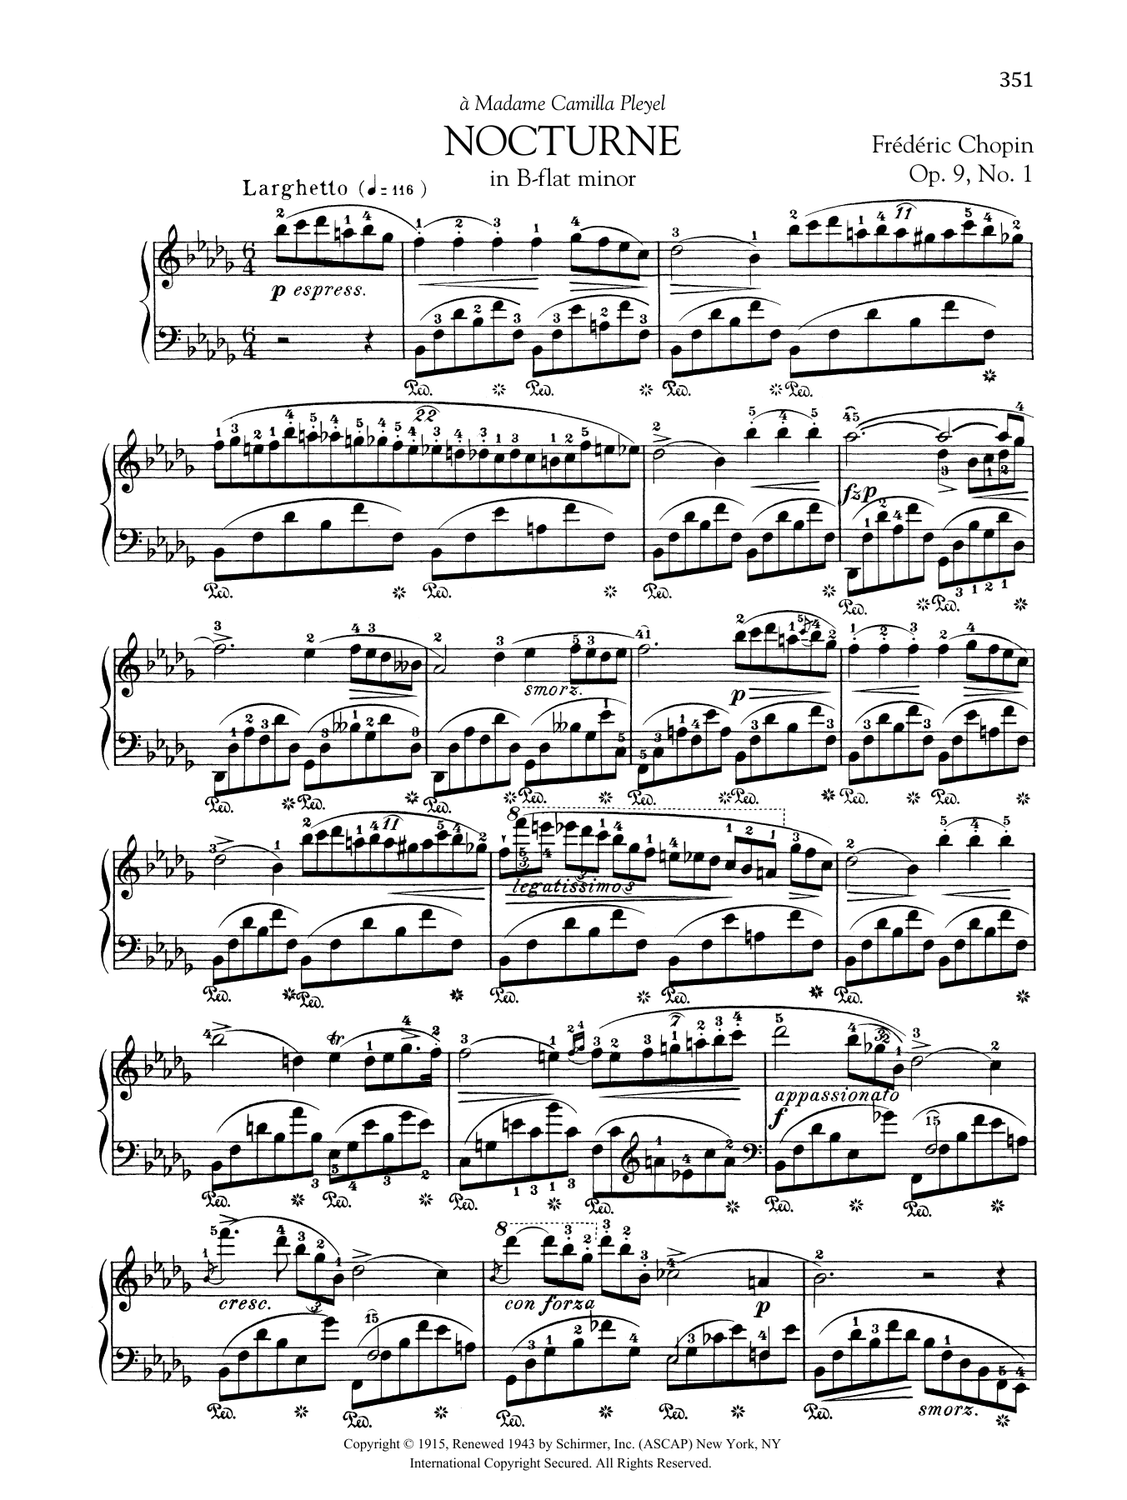 Die 21 Nocturnes von Frédéric Chopin